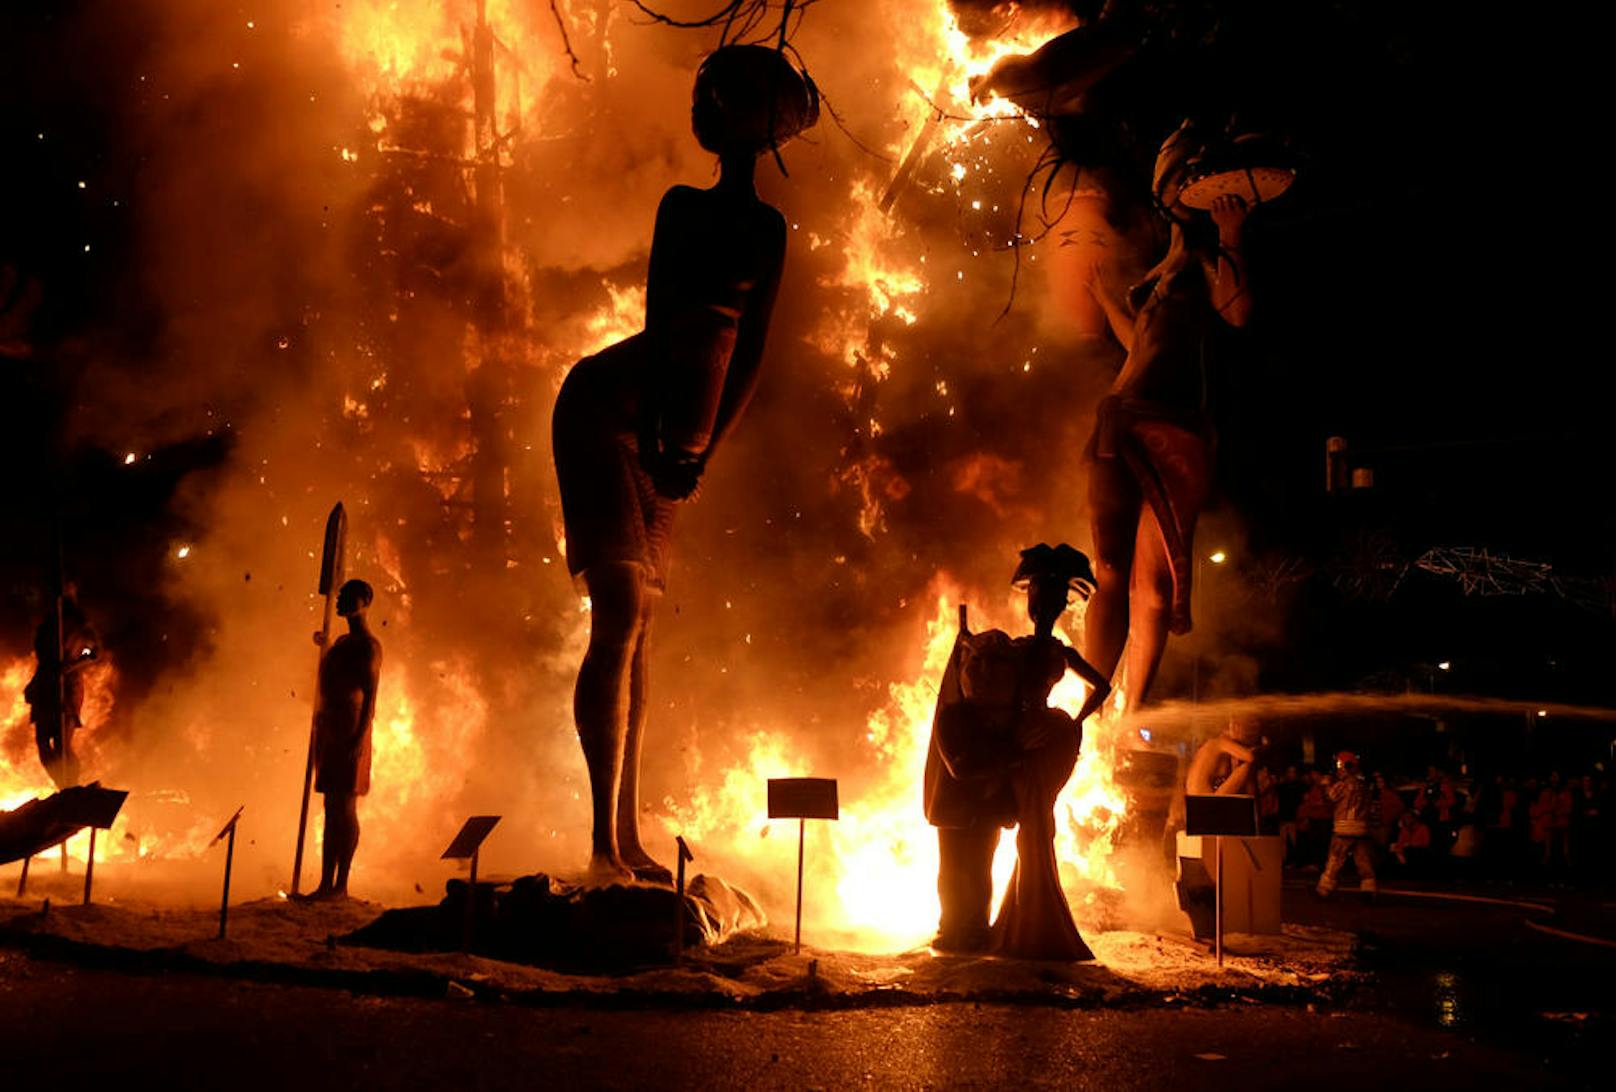 20.03.2017: Zum Abschluss des spanischen Frühlingsfests in Valencia werden haushohe Skulpturen (Fallas) aus brennbaren Materialien angezündet. (Foto: Reuters)